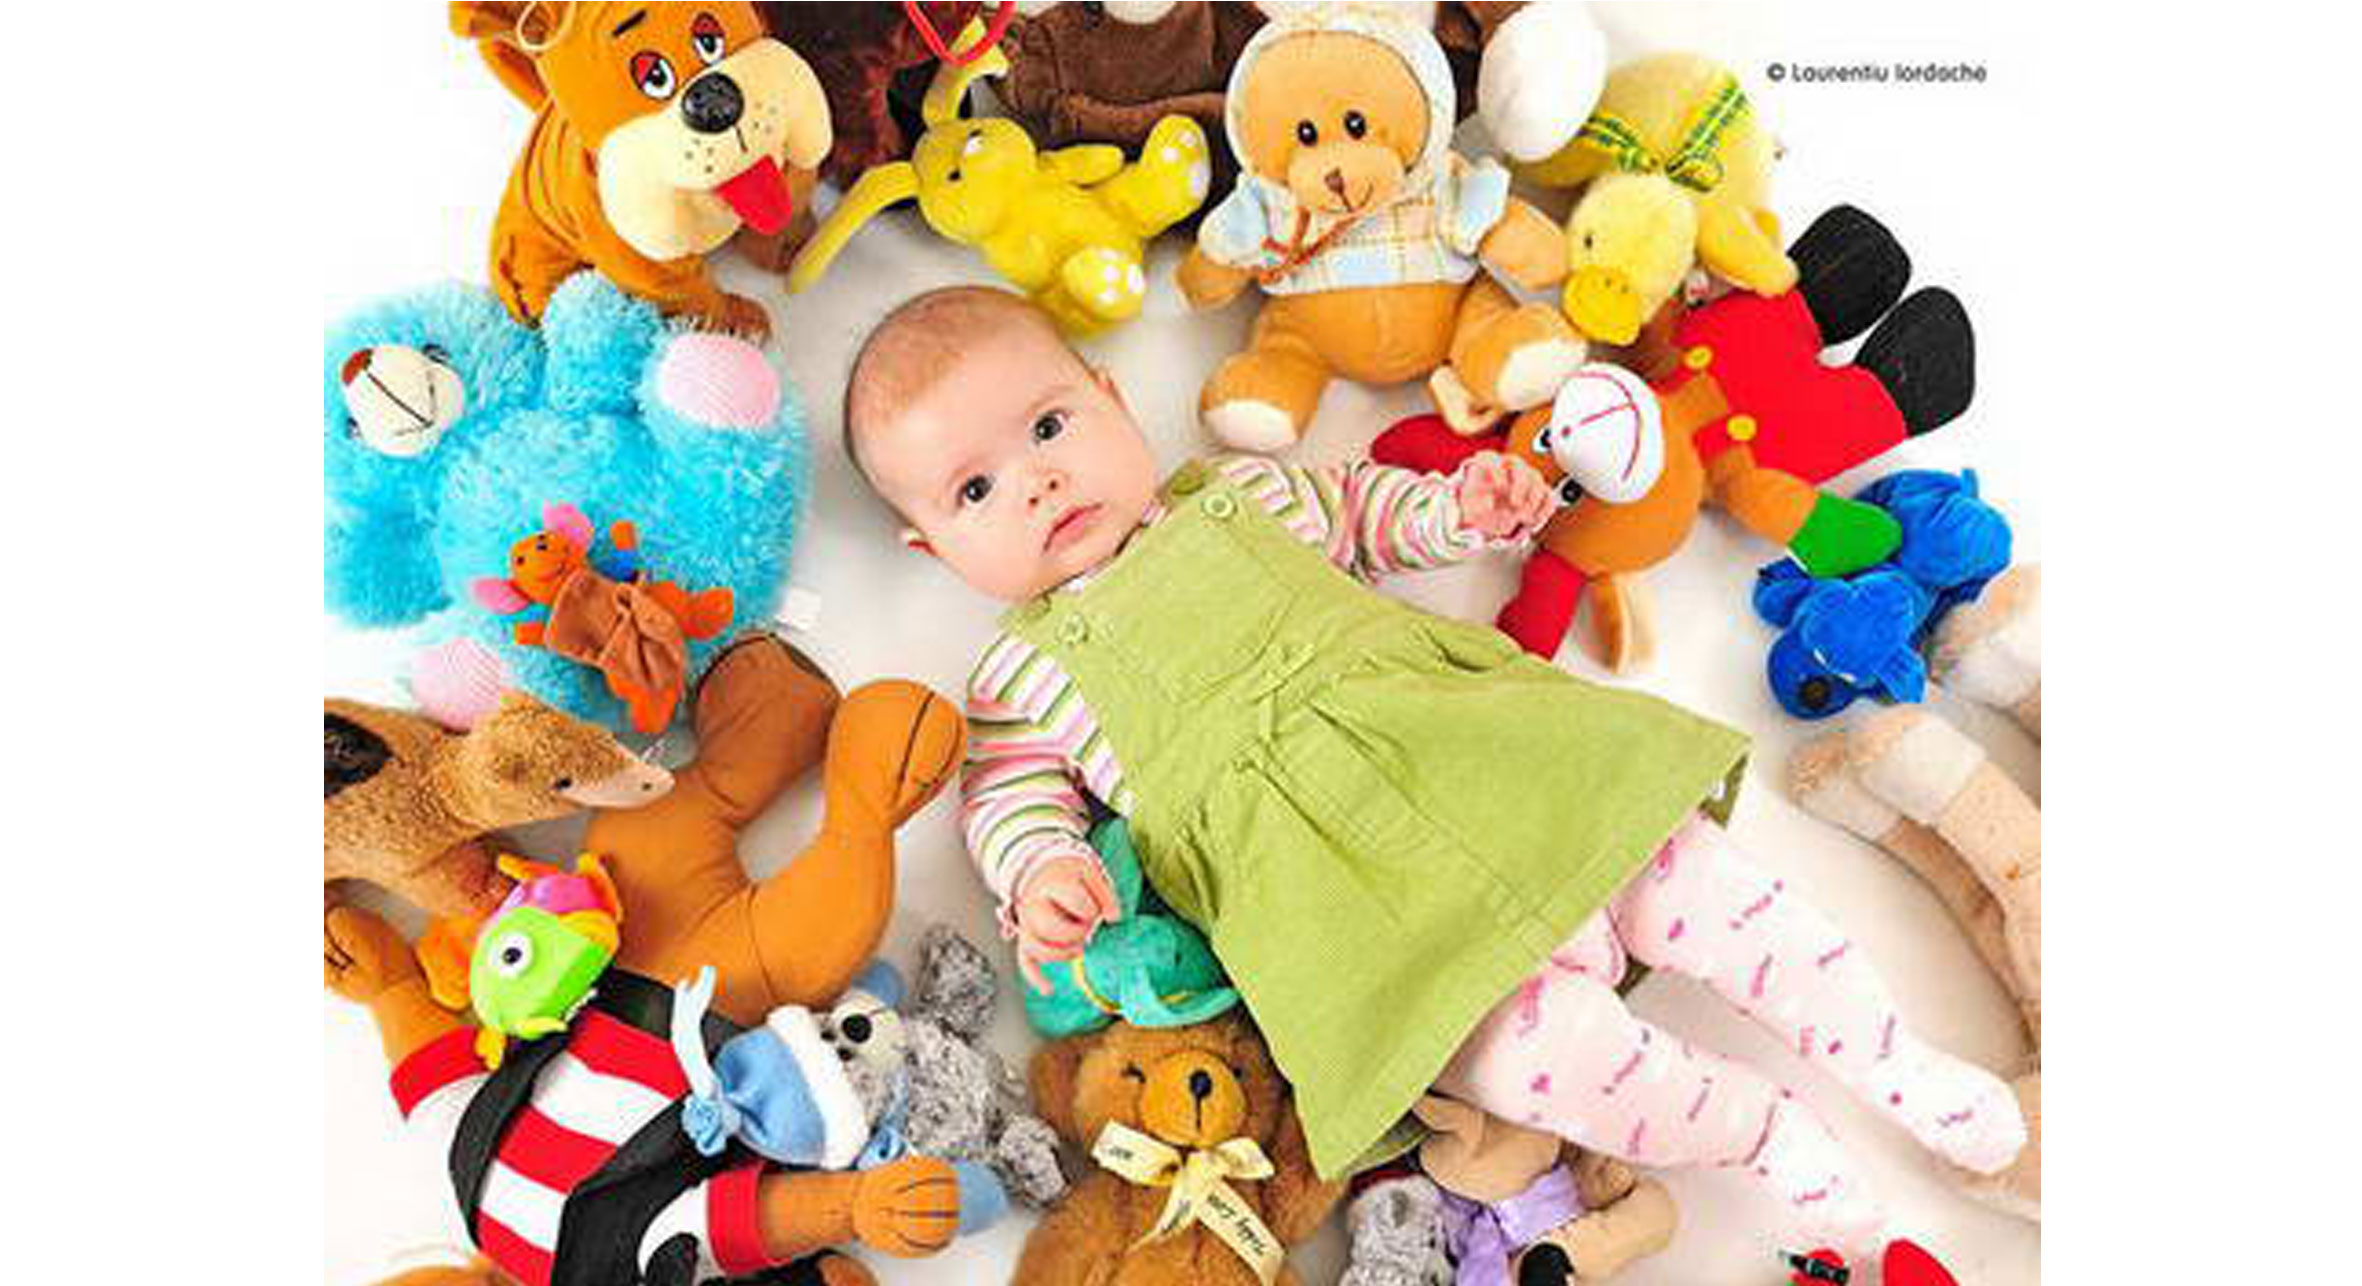 پنج روش برای مدیریت وسایل و اسباب بازی های کودک شما